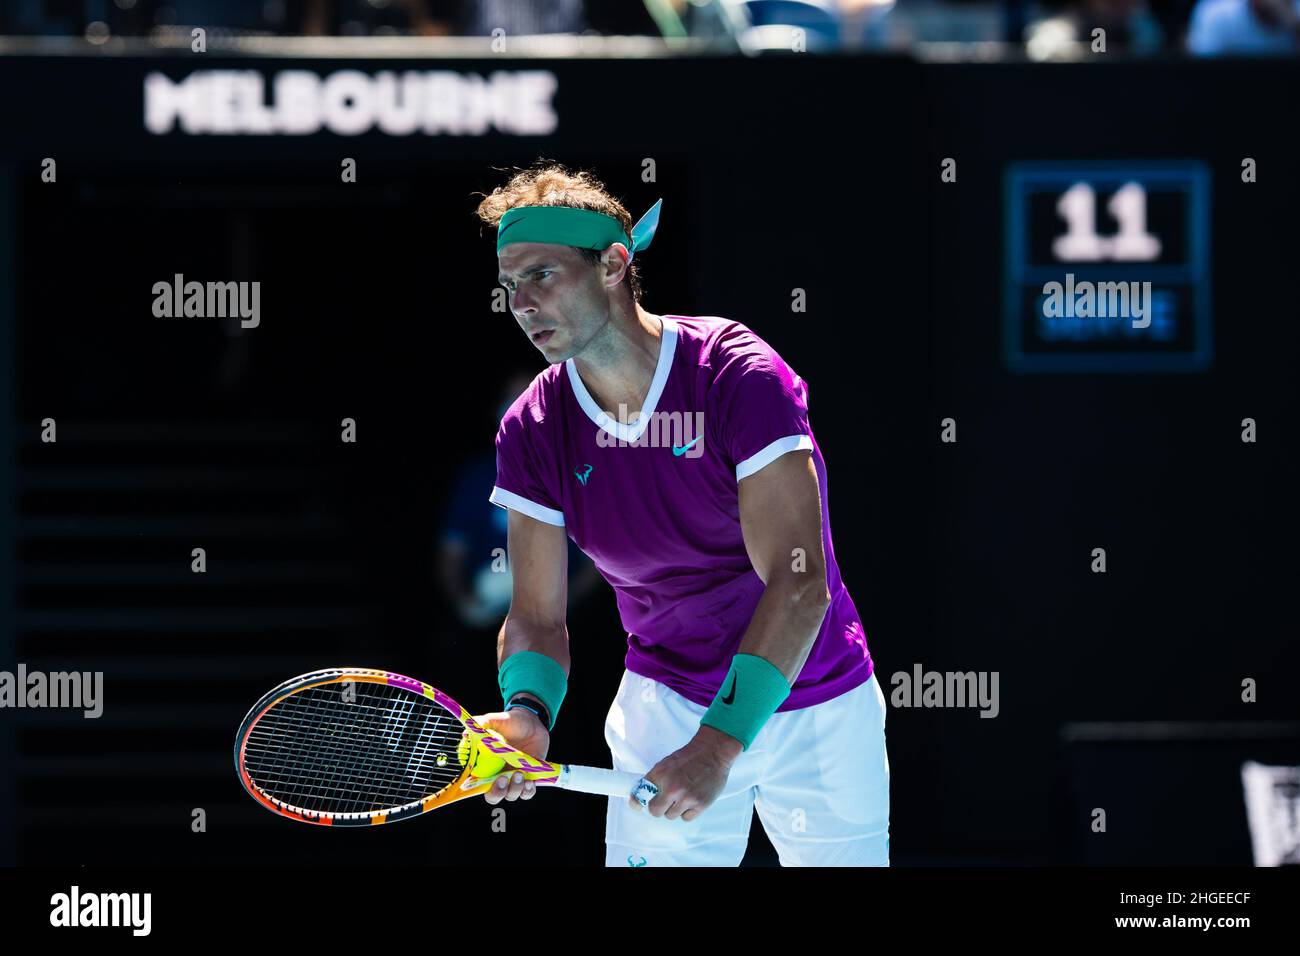 Rafael Nadal ist bereit, während des Australian Open 2022 Round 1-Spiels des Grand Slams in der Rod Laver Arena im Melbourne Olympic Park zu dienen.(Endstand Nadal gewinnt in 3 Sätzen 6:1, 6:4, 6:2). Stockfoto